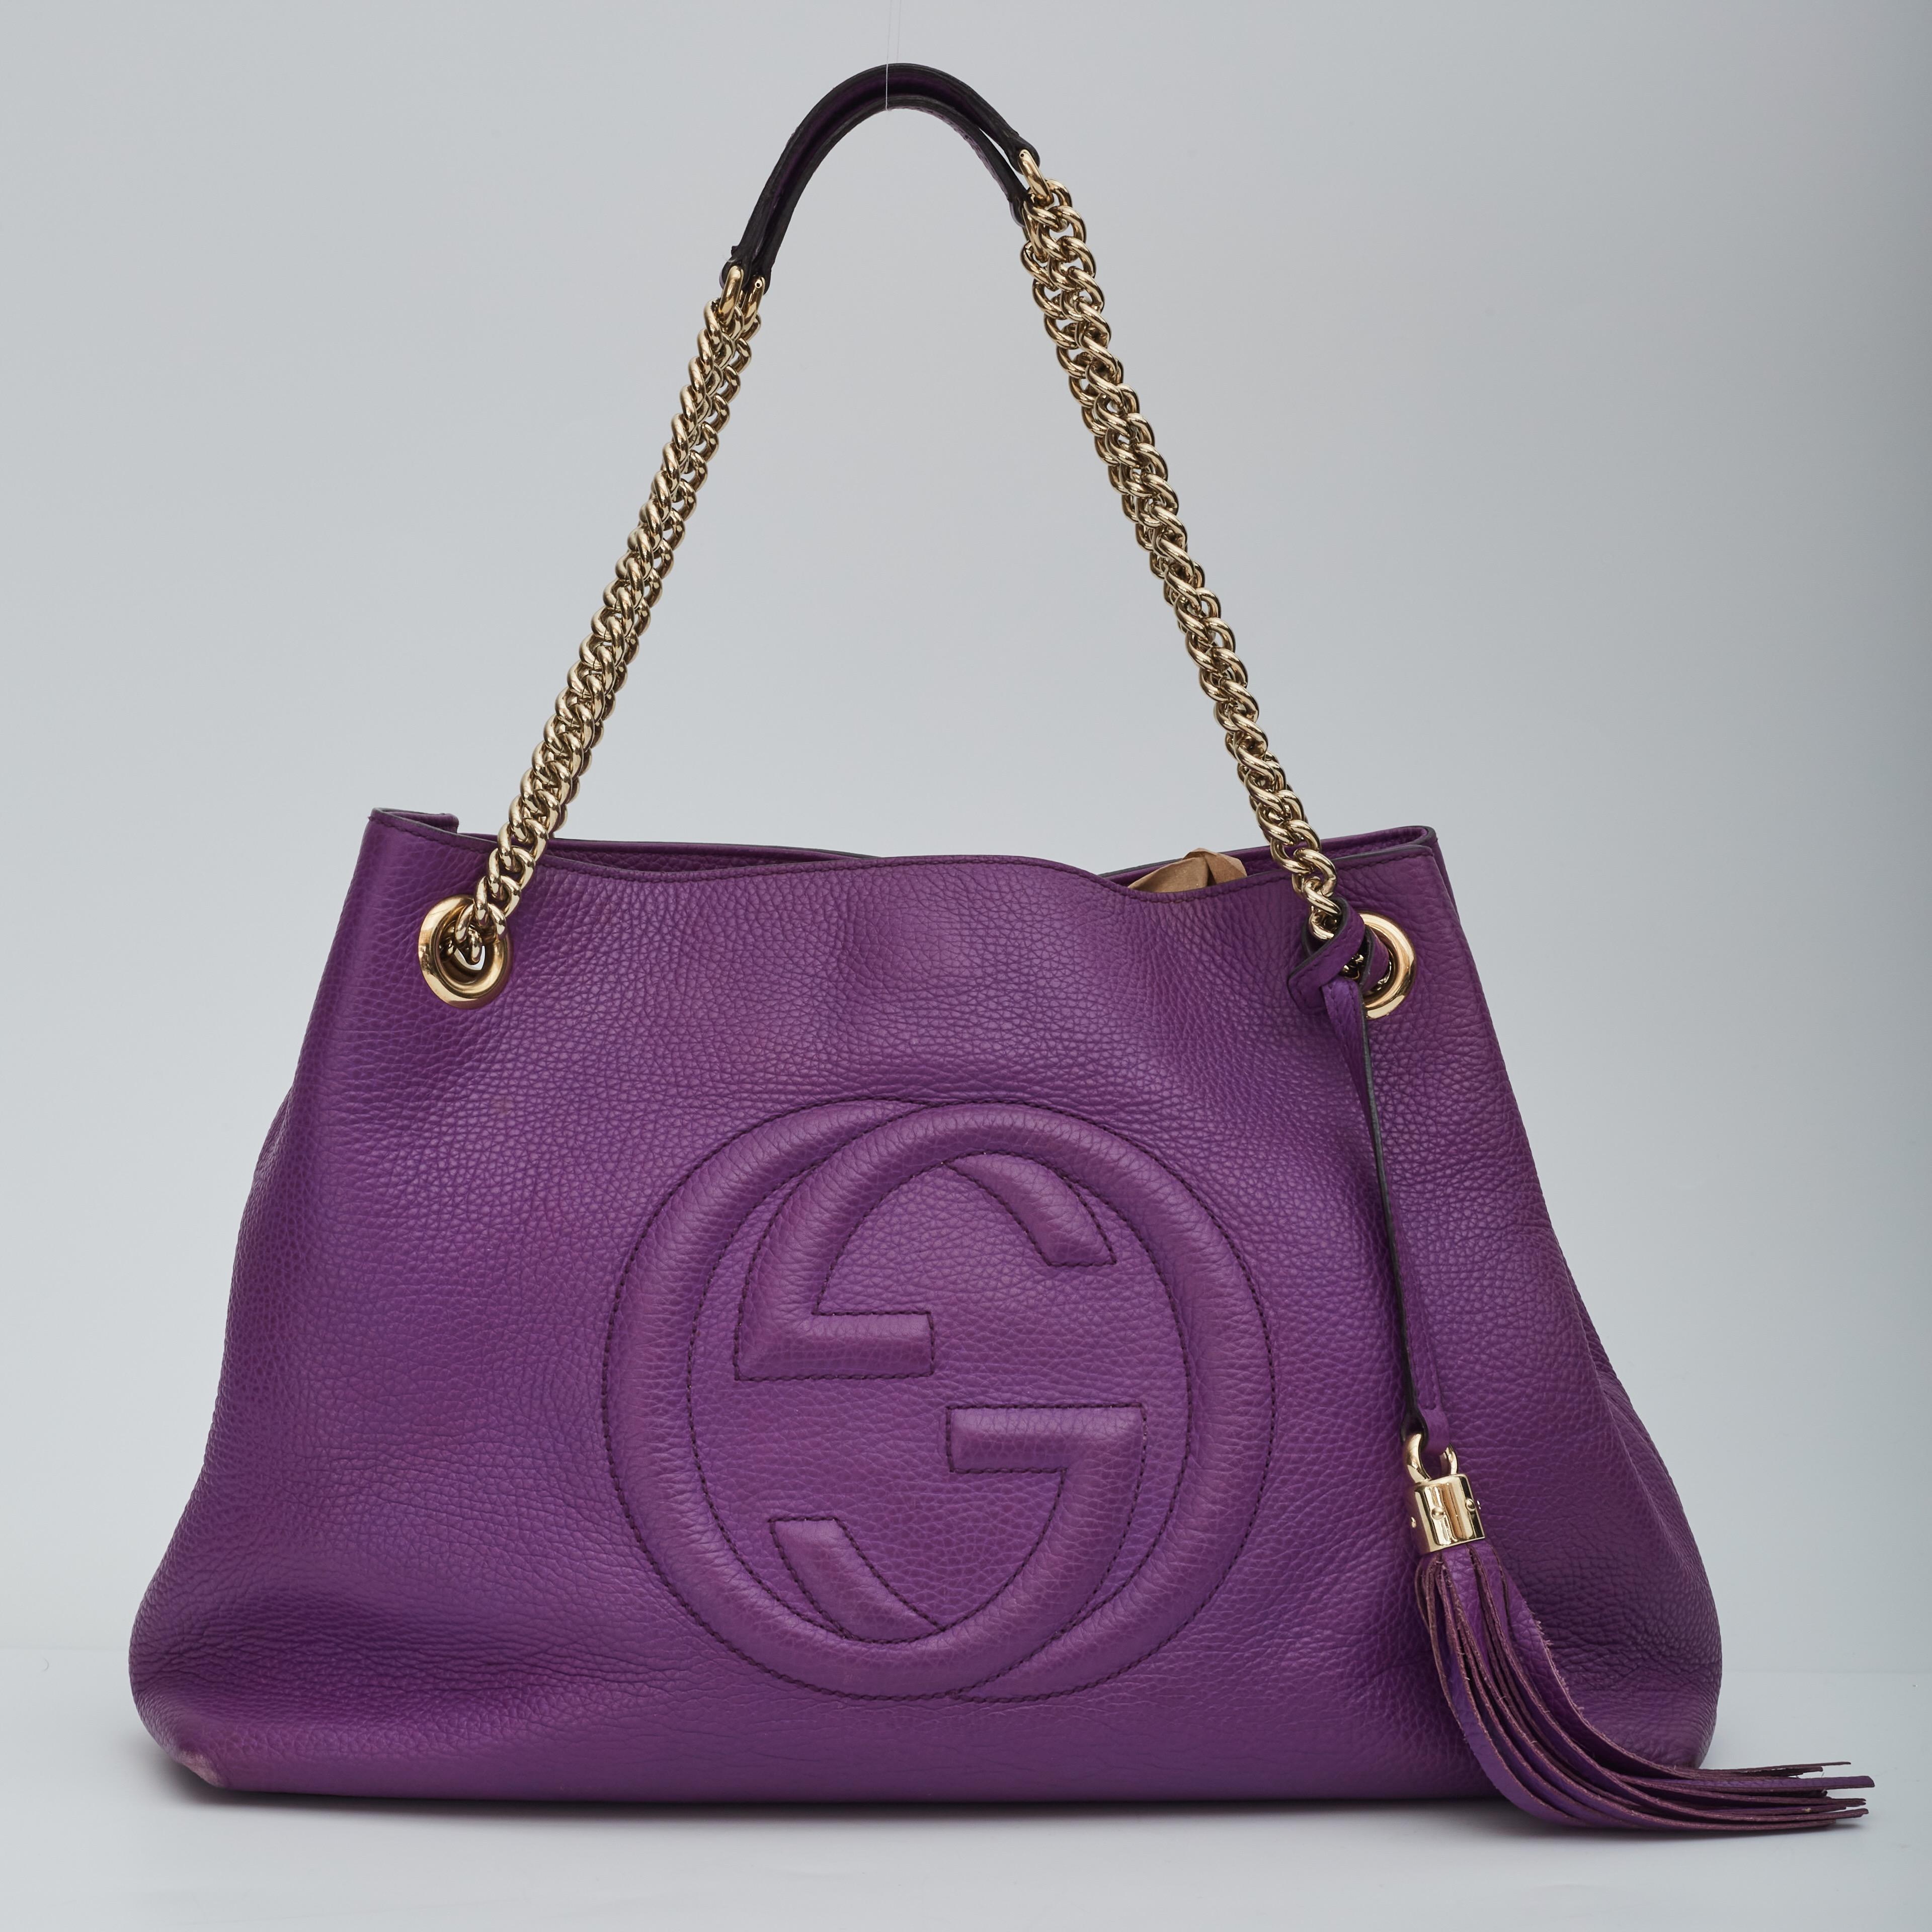 Ce sac à bandoulière est réalisé en cuir de veau texturé violet. Le sac est orné d'un logo matelassé GG imbriqué sur le devant, de bandoulières à maillons de chaîne en or clair poli avec des coussinets et d'un pompon décoratif en or clair. Le dessus